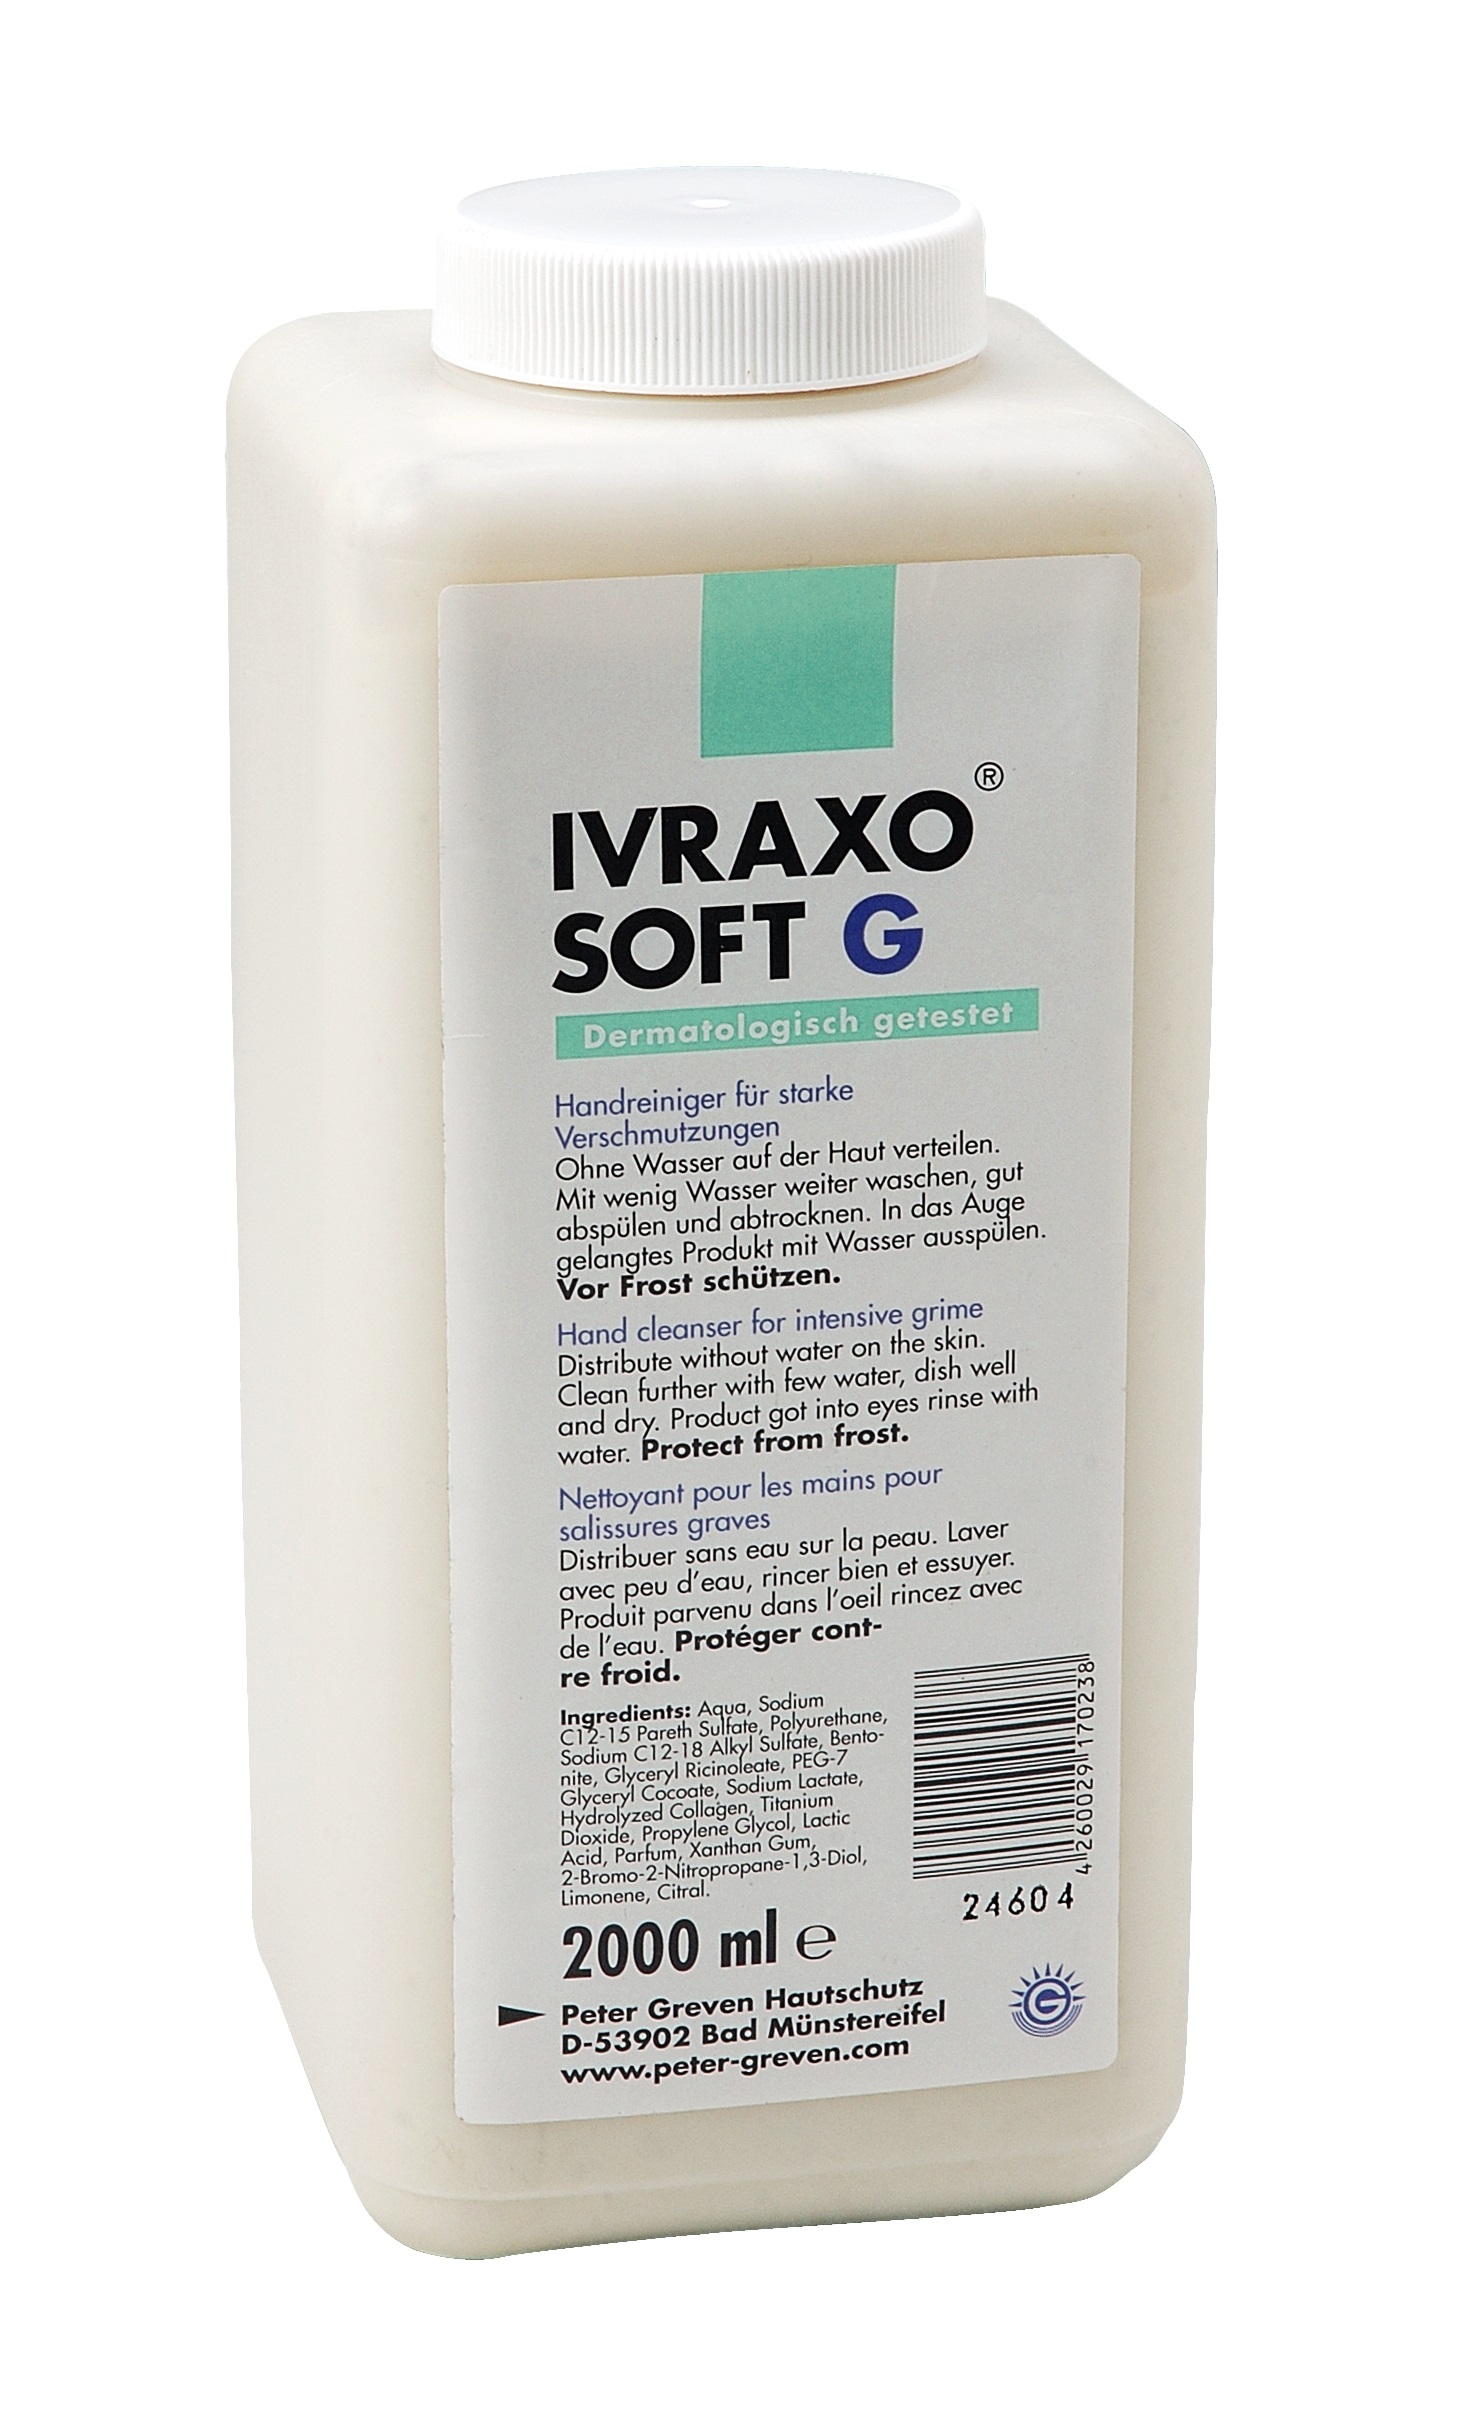 Handreiniger Ivraxo Soft G, 250 ml Flasche